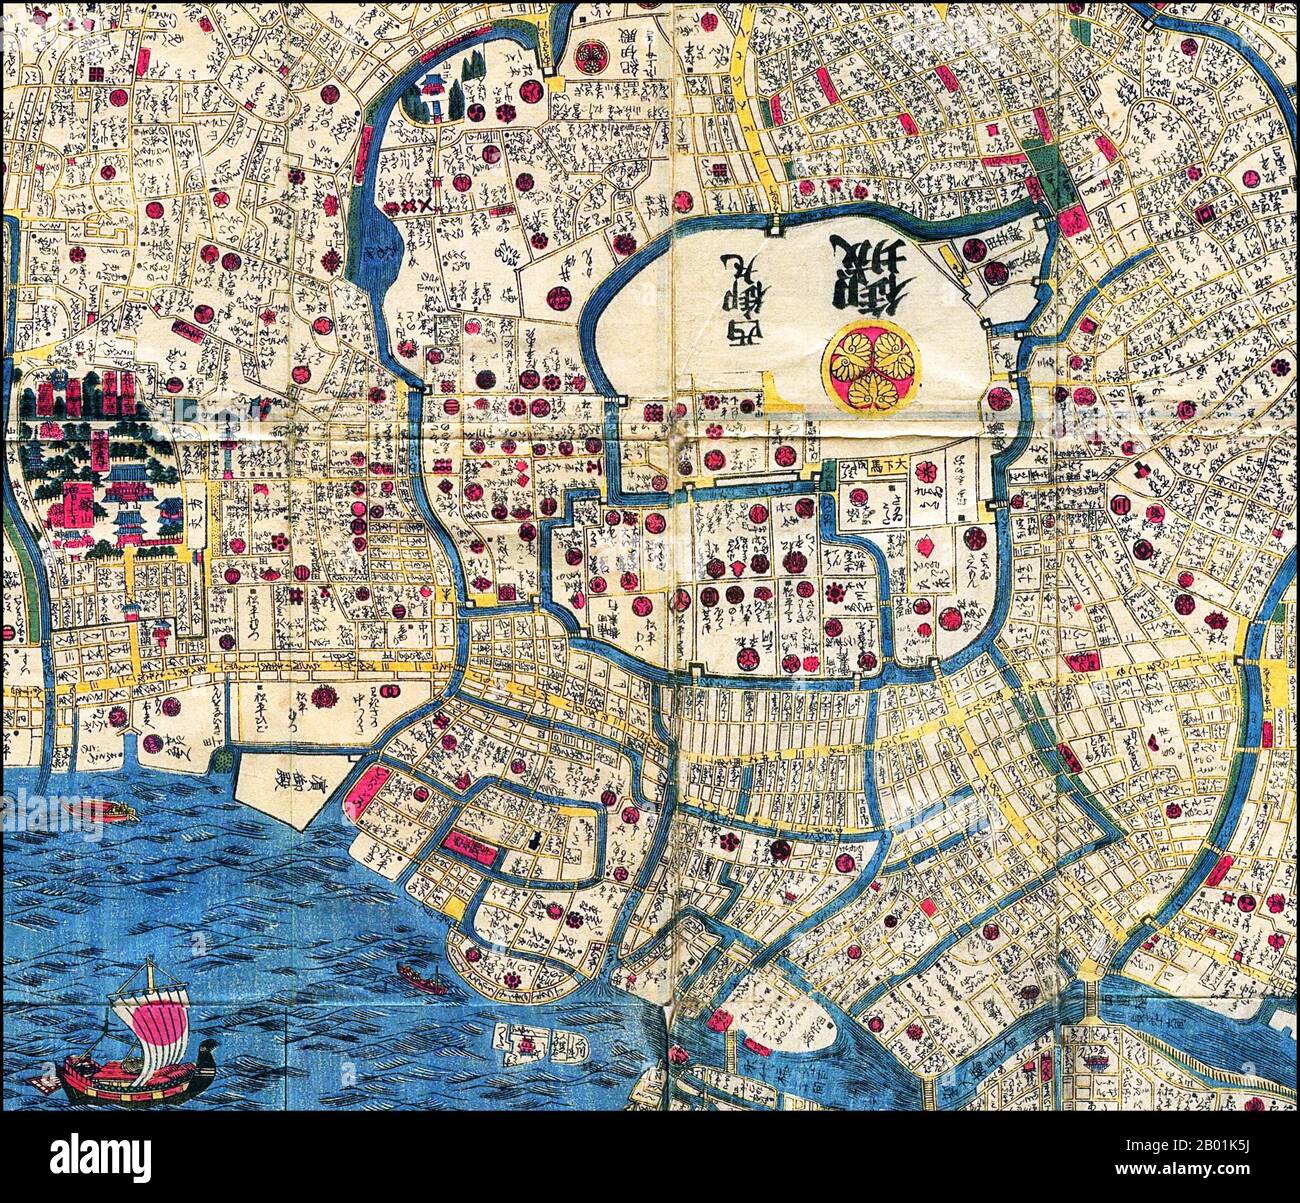 Japan: Karte von Edo (Detail des Zentrums, Spitze ist genau nach Westen), um 1840. Edo (江戸, wörtlich „Bucht-Eingang“ oder „Mündung“), auch als Yedo oder Yeddo romanisiert, ist der frühere Name der japanischen Hauptstadt Tokio und war der Sitz der Macht für das Tokugawa-Shogunat, das Japan von 1603 bis 1868 regierte. In dieser Zeit entwickelte sie sich zu einer der größten Städte der Welt und zum Schauplatz einer lebendigen städtischen Kultur, die sich auf die Vorstellungen der „schwimmenden Welt“ konzentrierte. Stockfoto